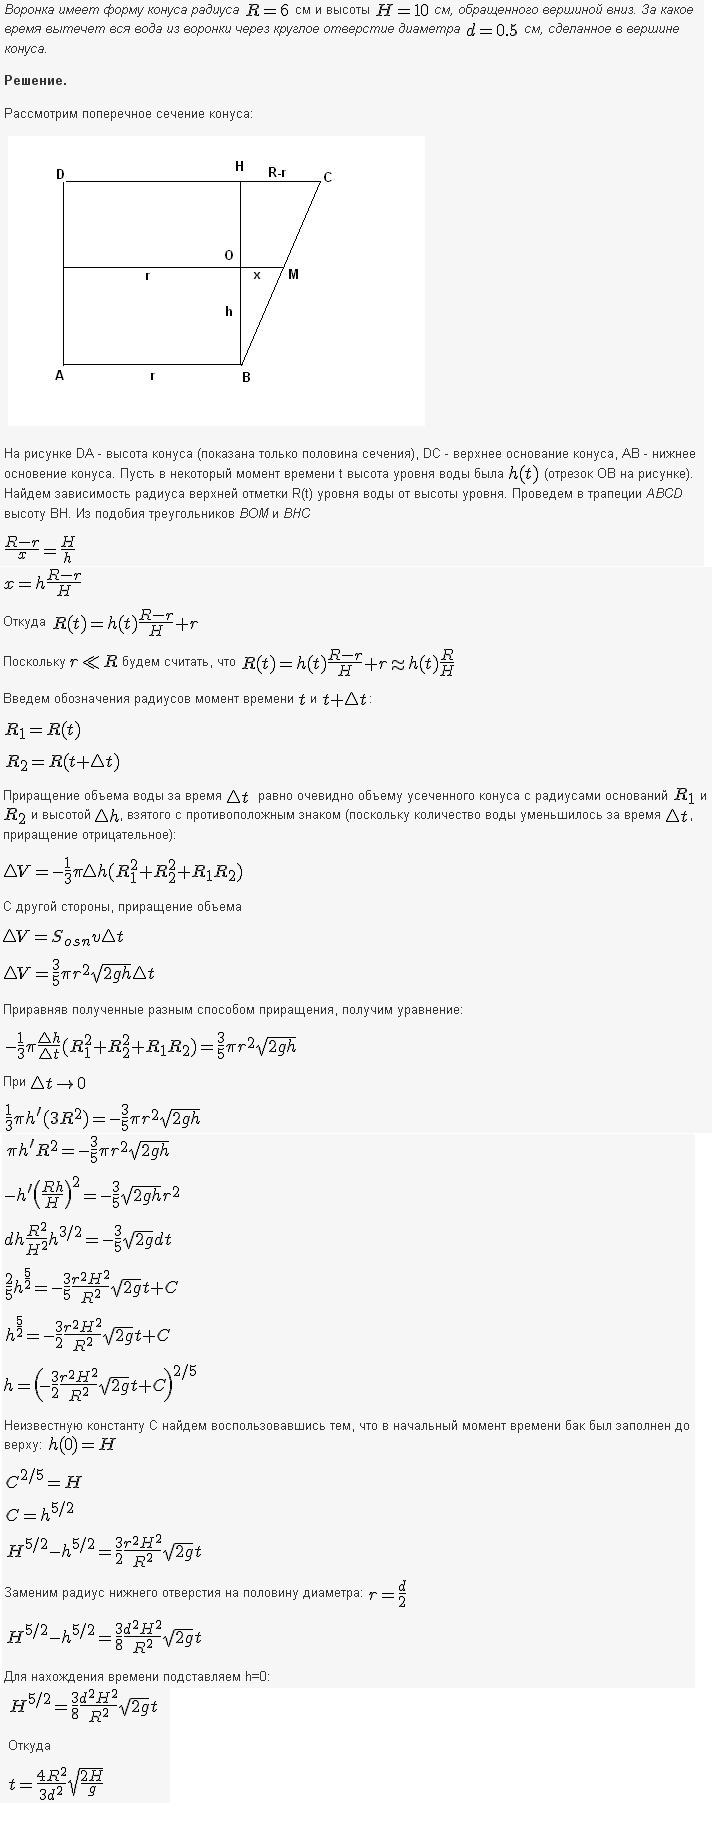 Решение дифференциальных уравнений - геометрические физические задачи